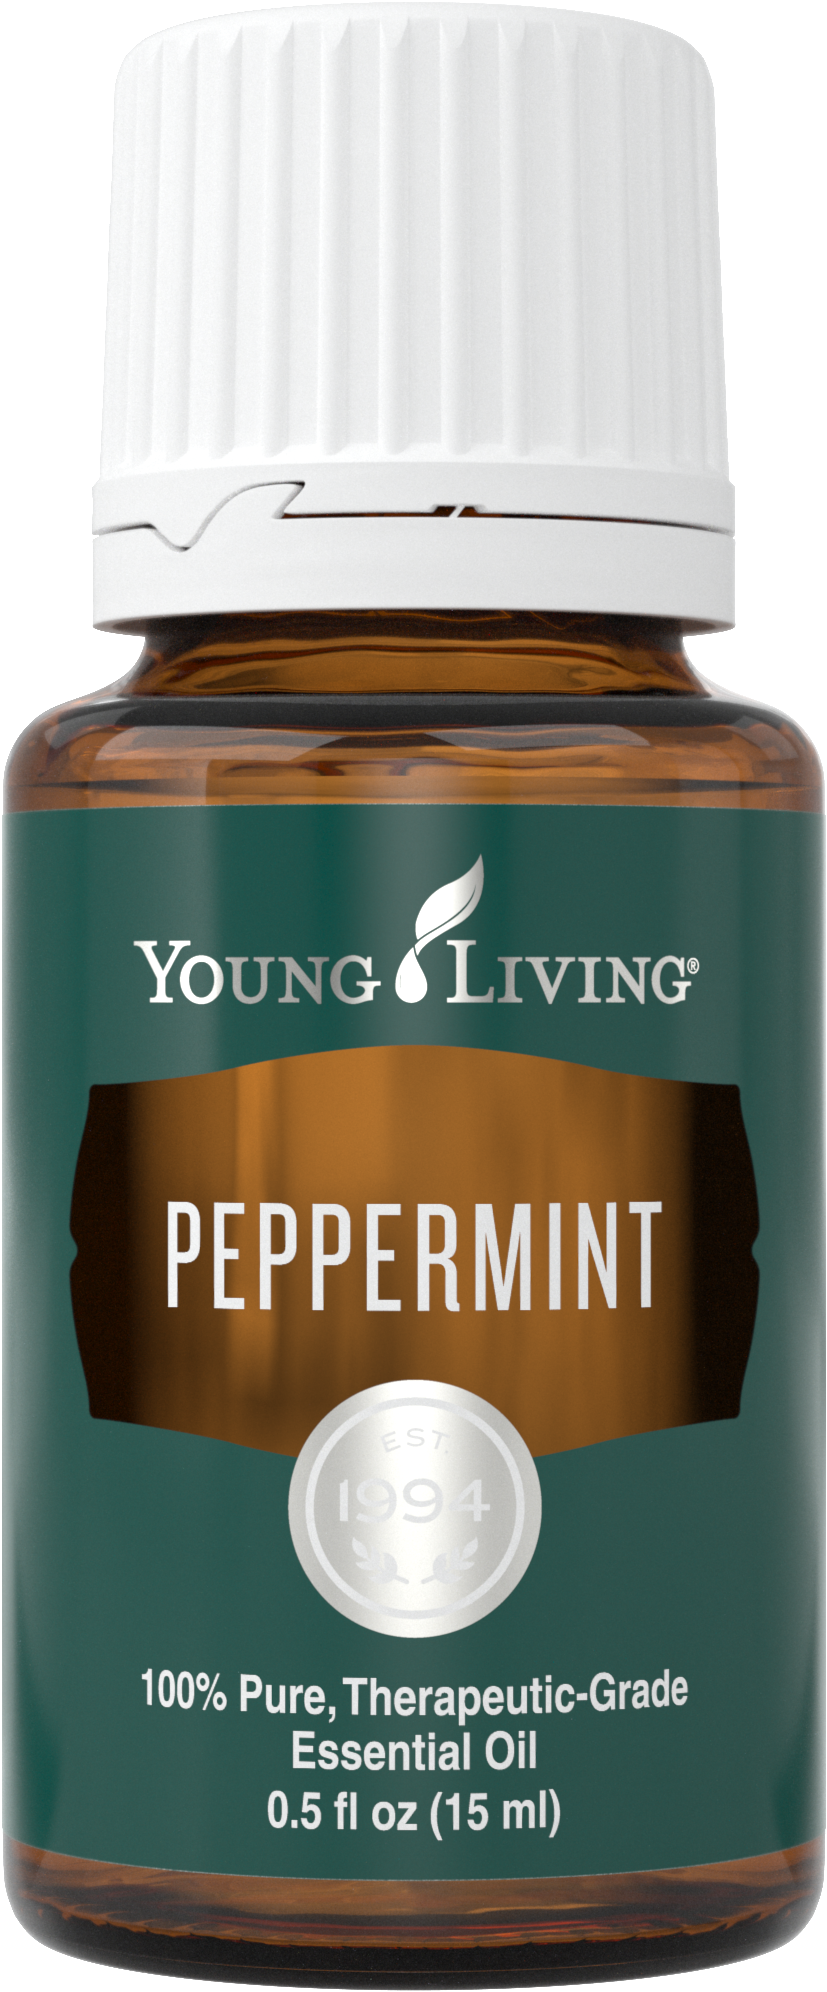 A Bottle Of Peppermint Oil